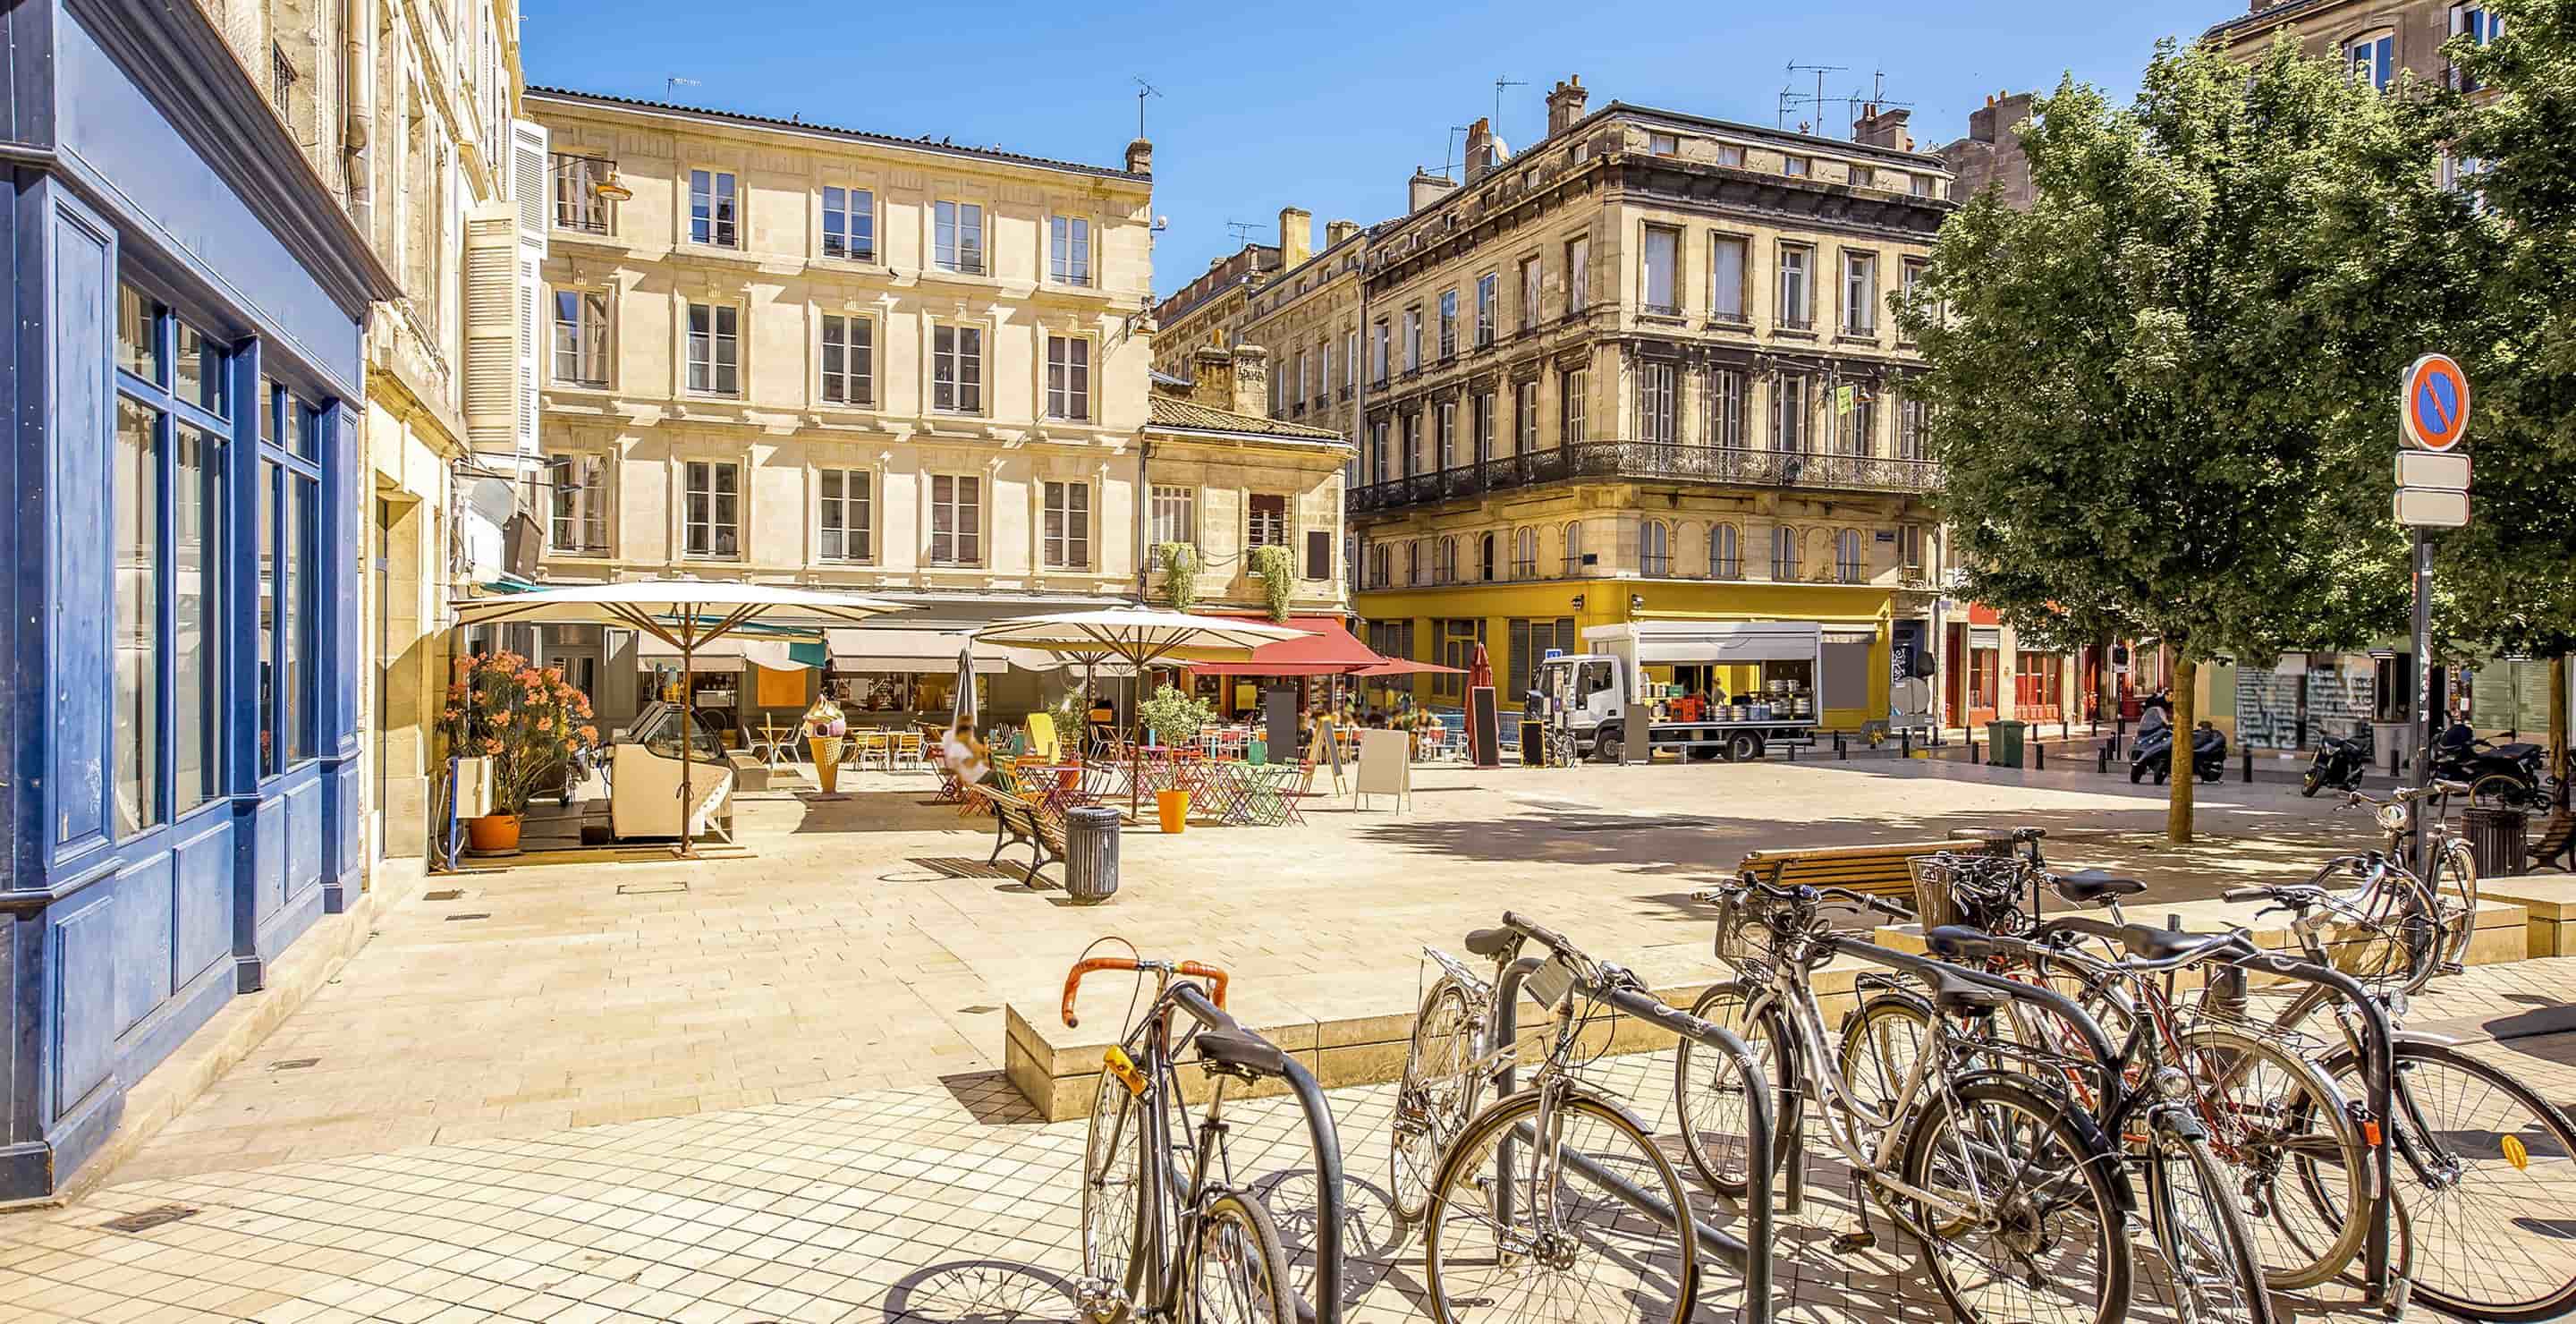 Free Mobile 3G / 4G / 5G hartă rată de biți în Bordeaux, France